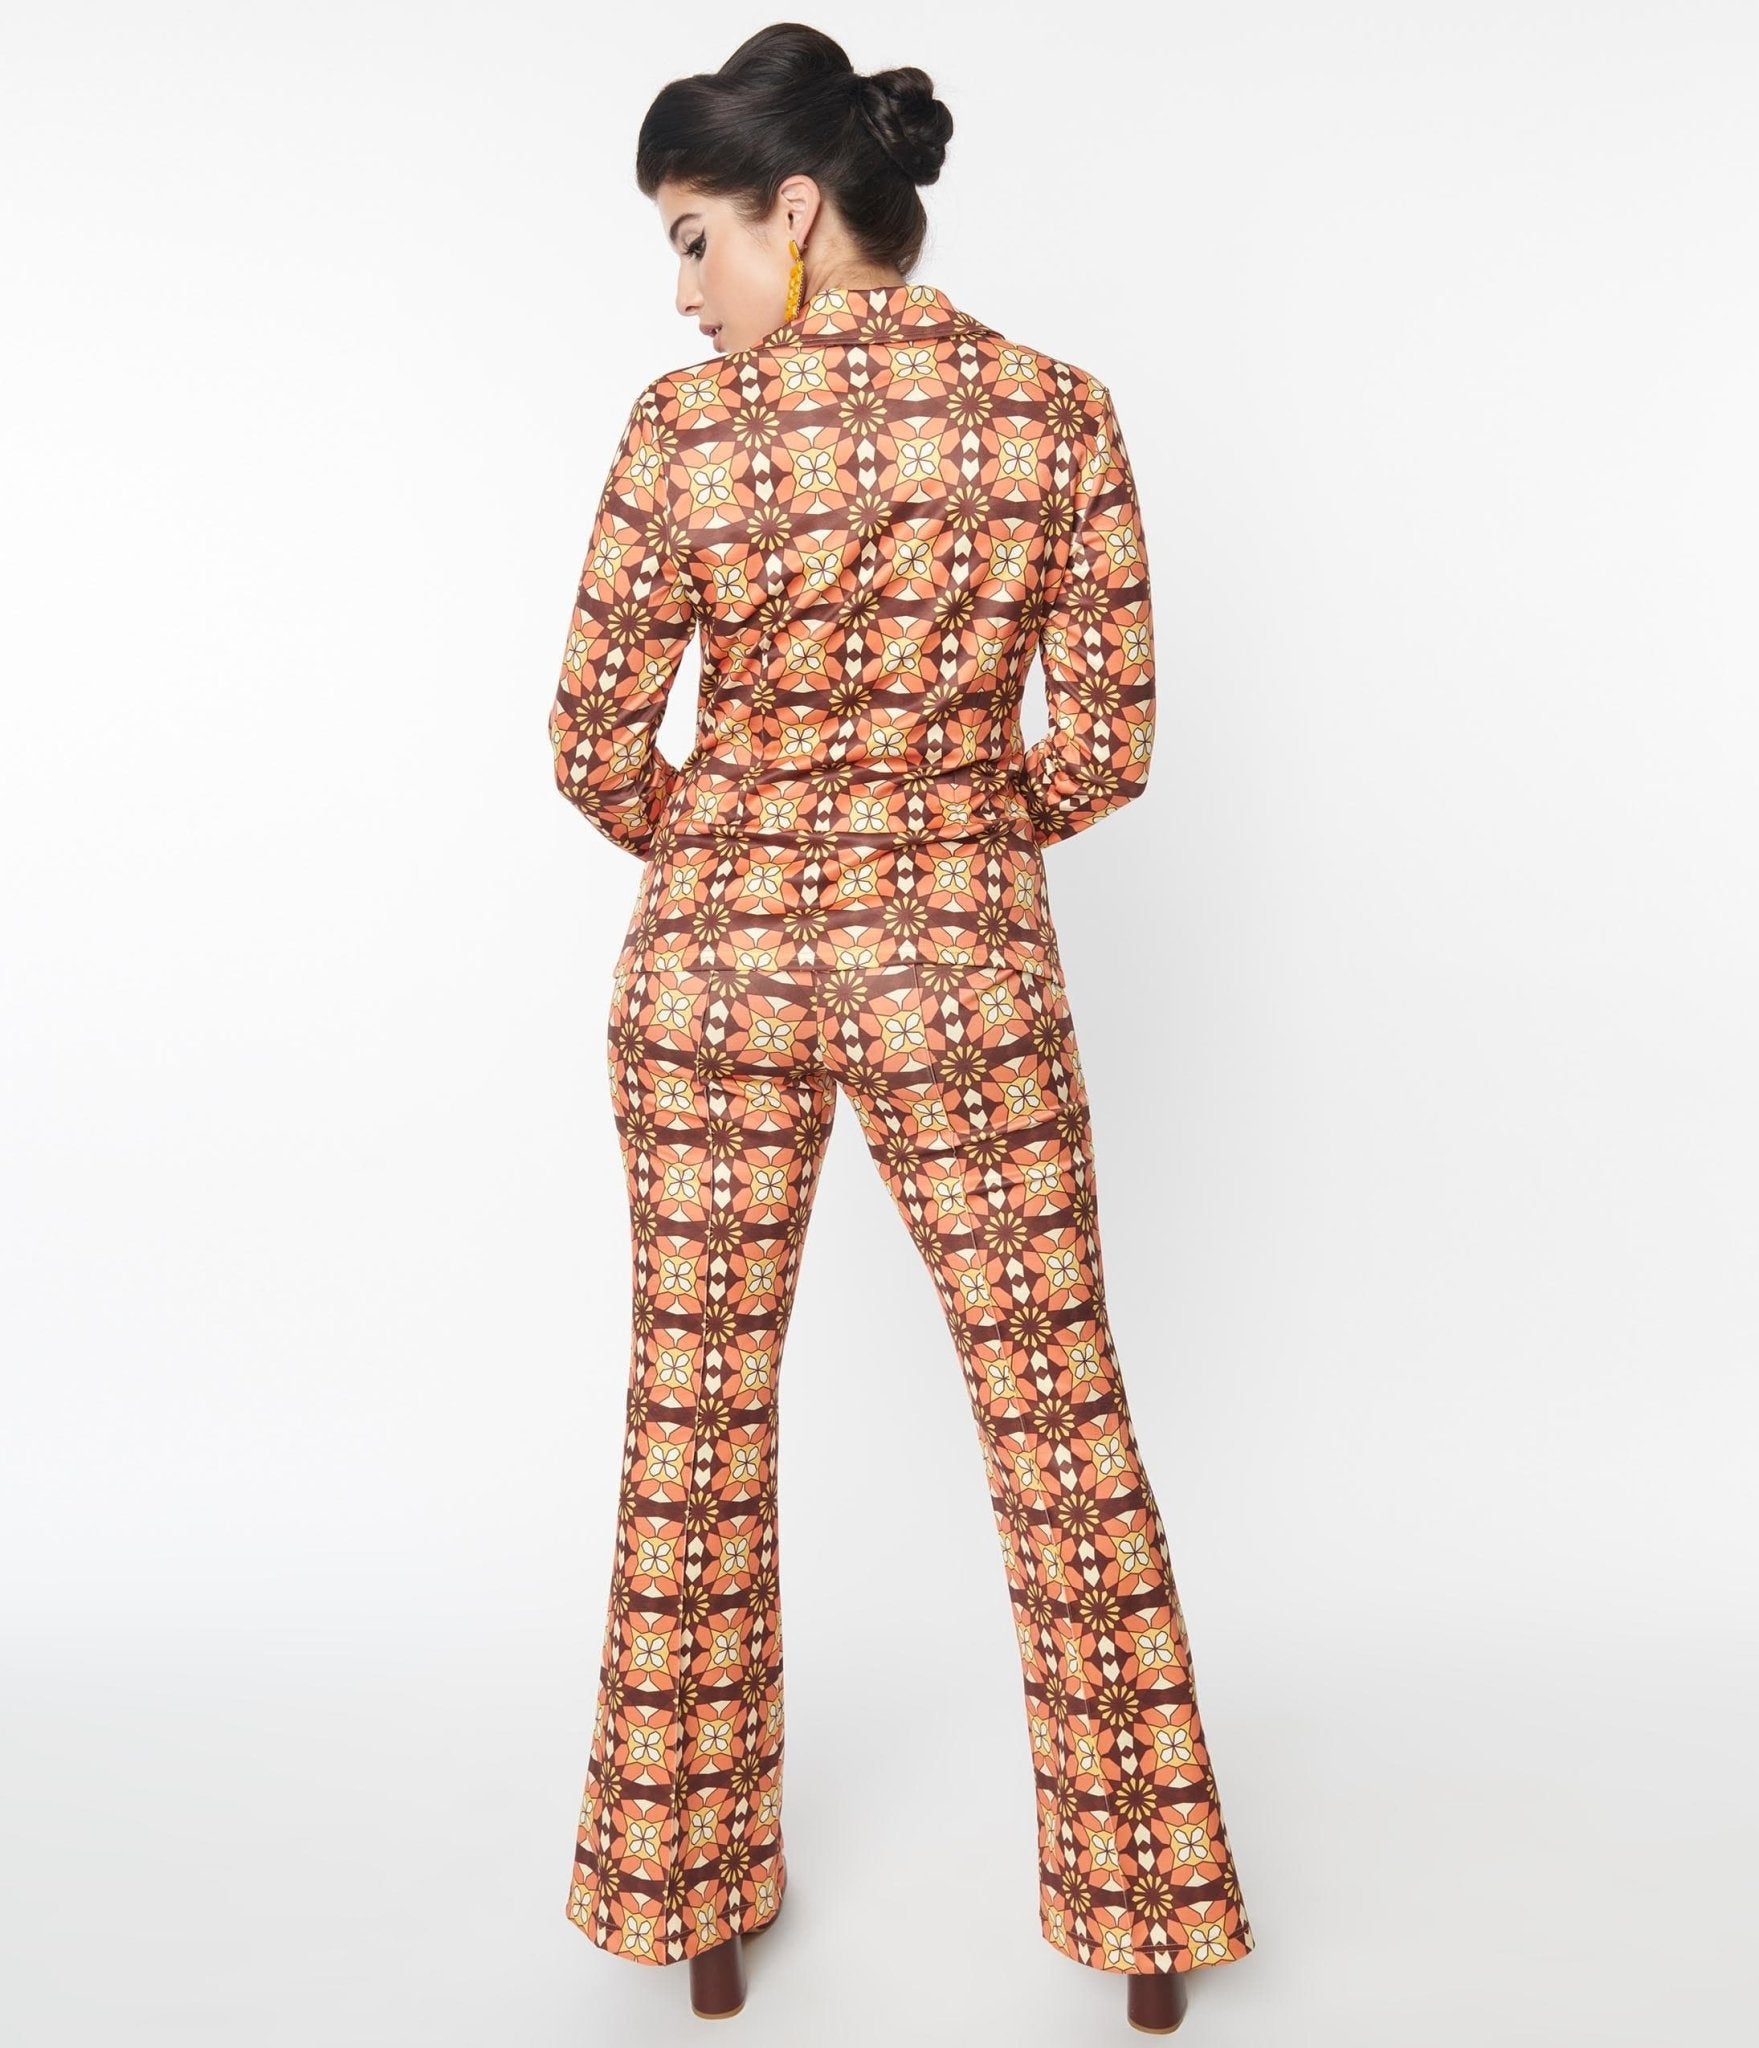 https://www.unique-vintage.com/cdn/shop/products/unique-vintage-orange-brown-mosaic-flare-pants-591036.jpg?v=1703099619&width=1920